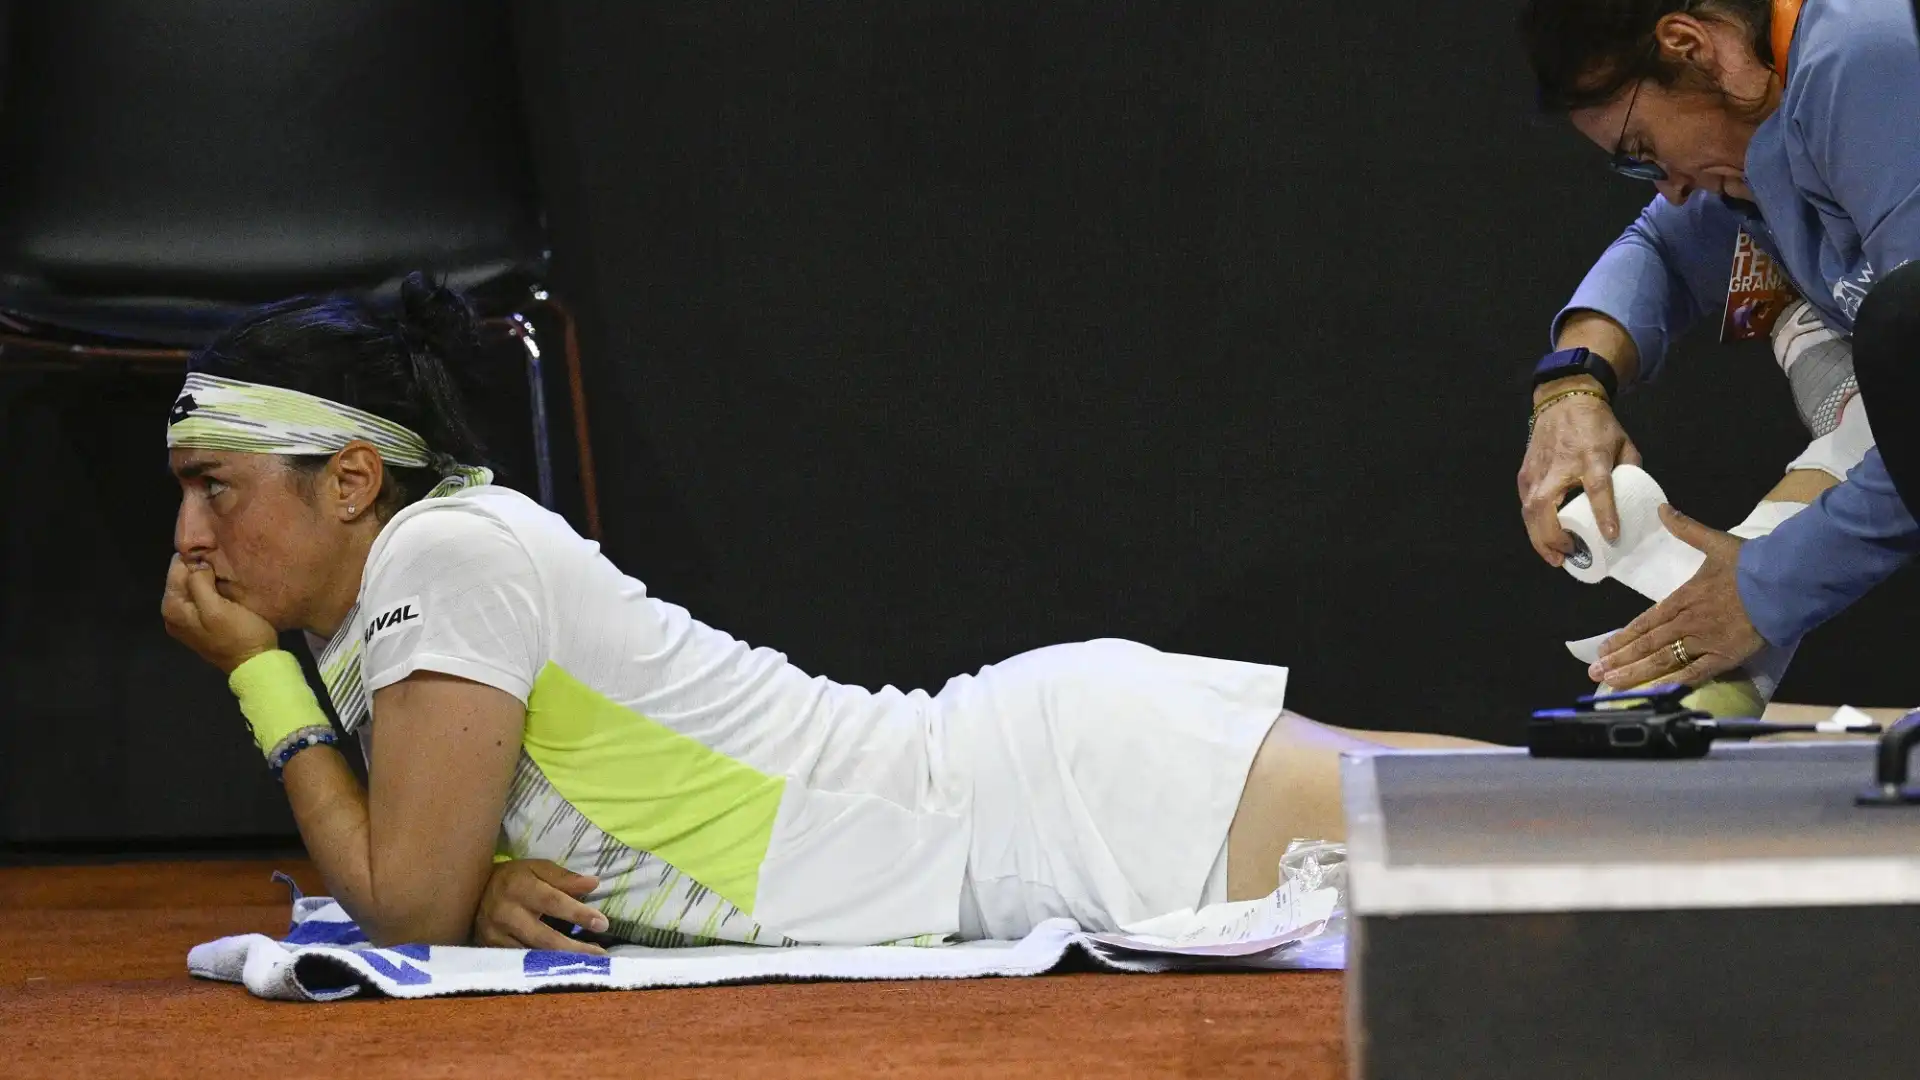 La tennista tunisina ha sentito subito male al polpaccio della gamba sinistra